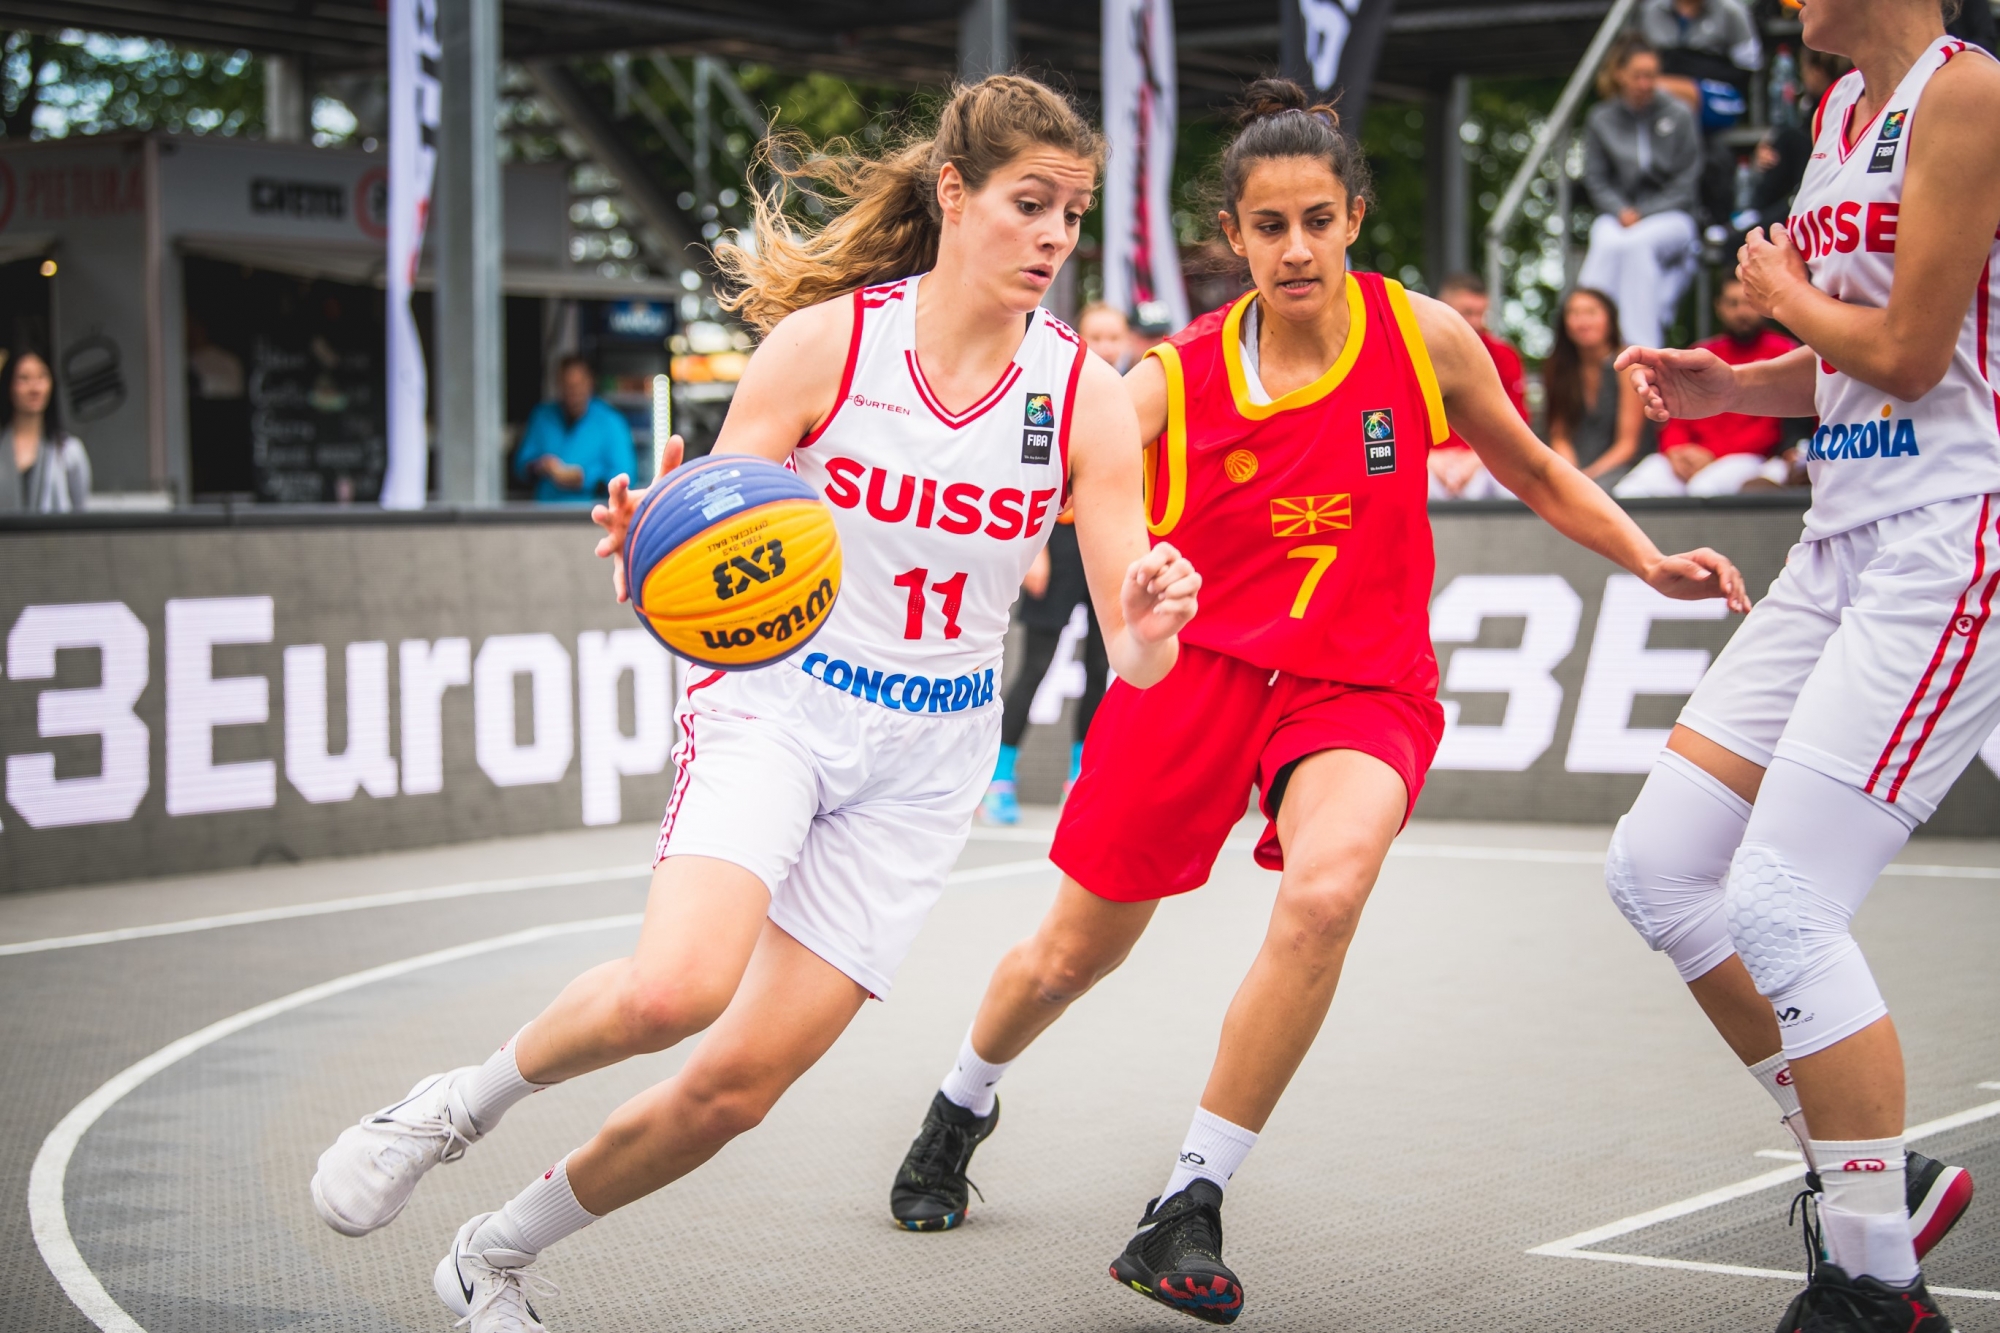 La basketteuse du BBC Troistorrents Eva Ruga a récemment défendu les couleurs de l'équipe suisse, tout comme la Martigneraine Marielle Giroud, une habituée de ce genre d'événements.